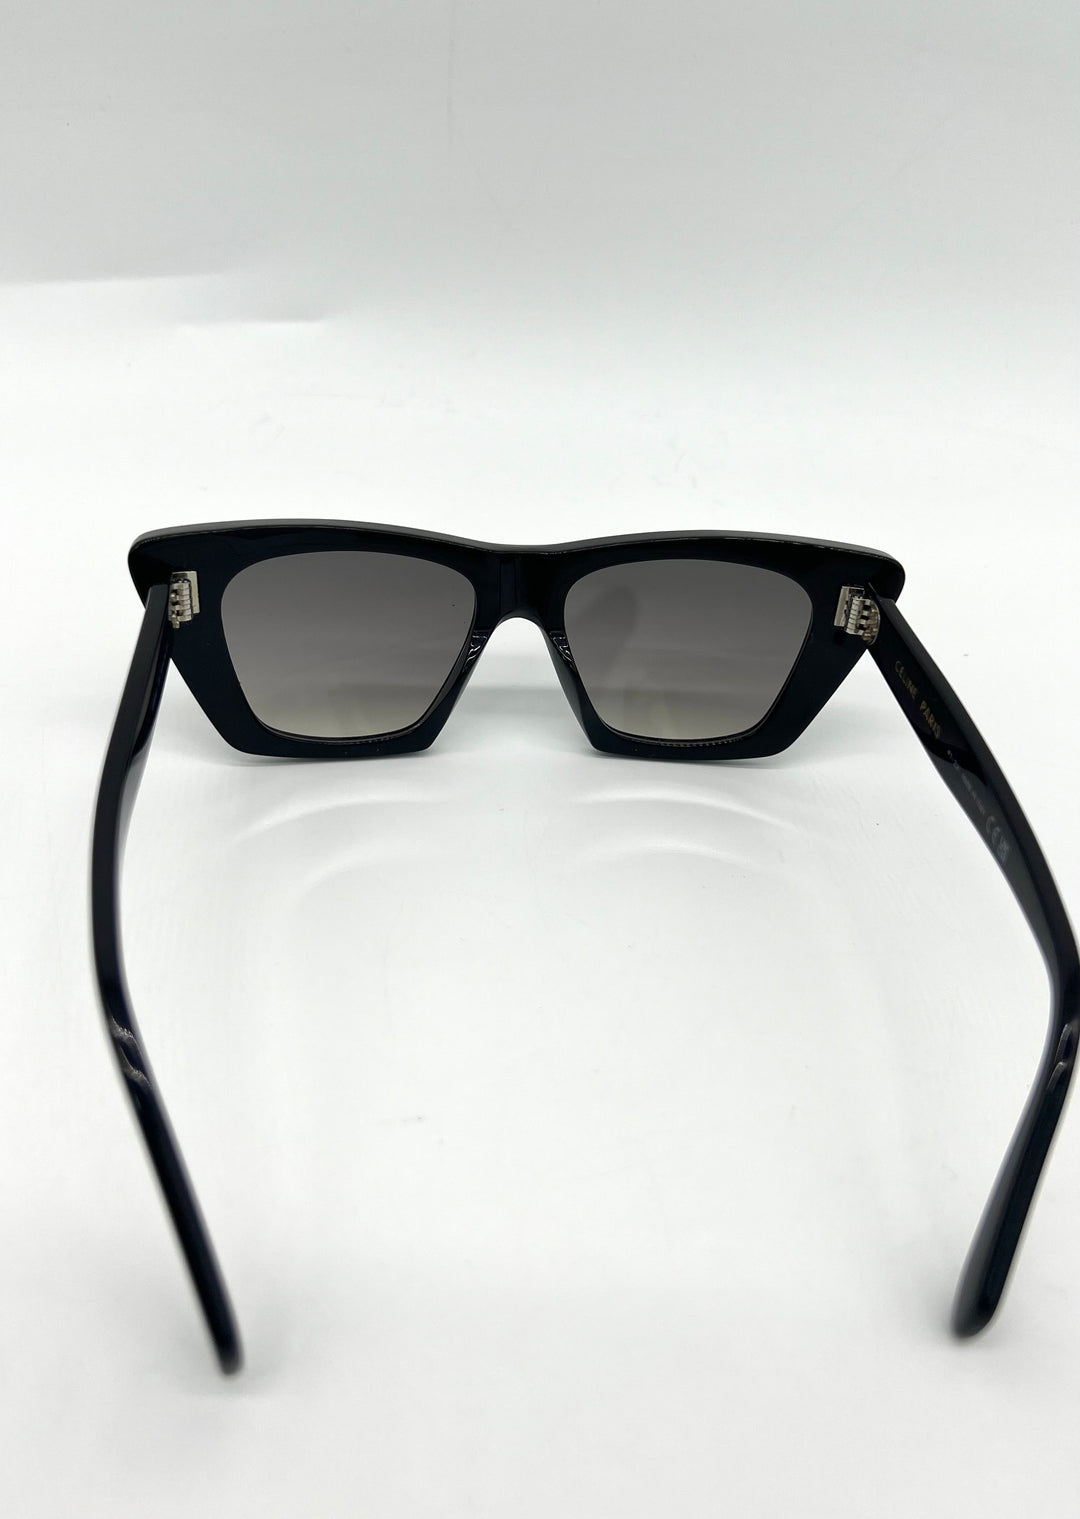 CELINE Sunglasses Black Cat Eye